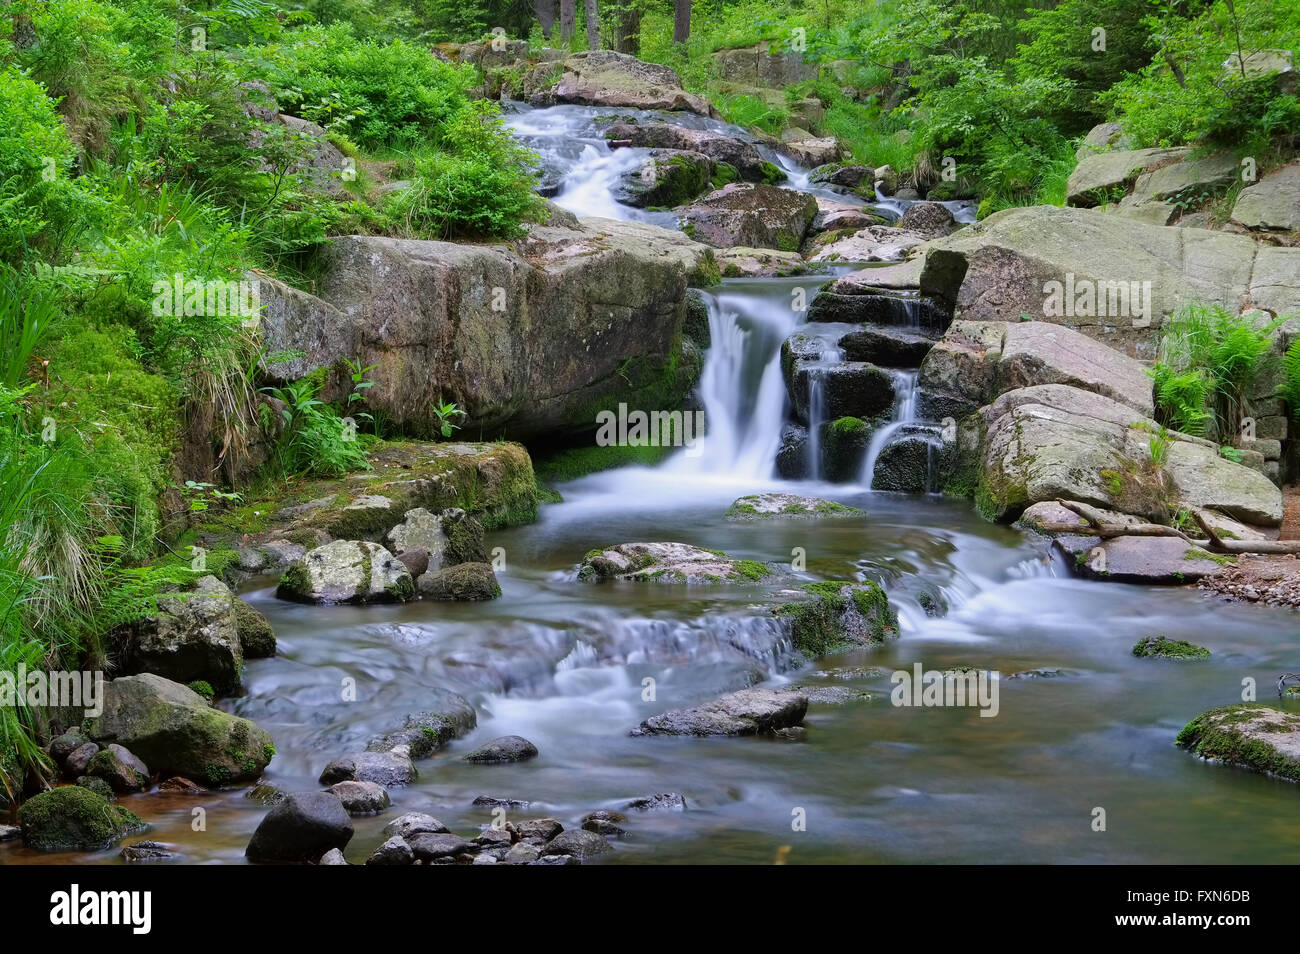 Bodewasserfall im Harz - rivière cascade de bon augure dans Harz Banque D'Images